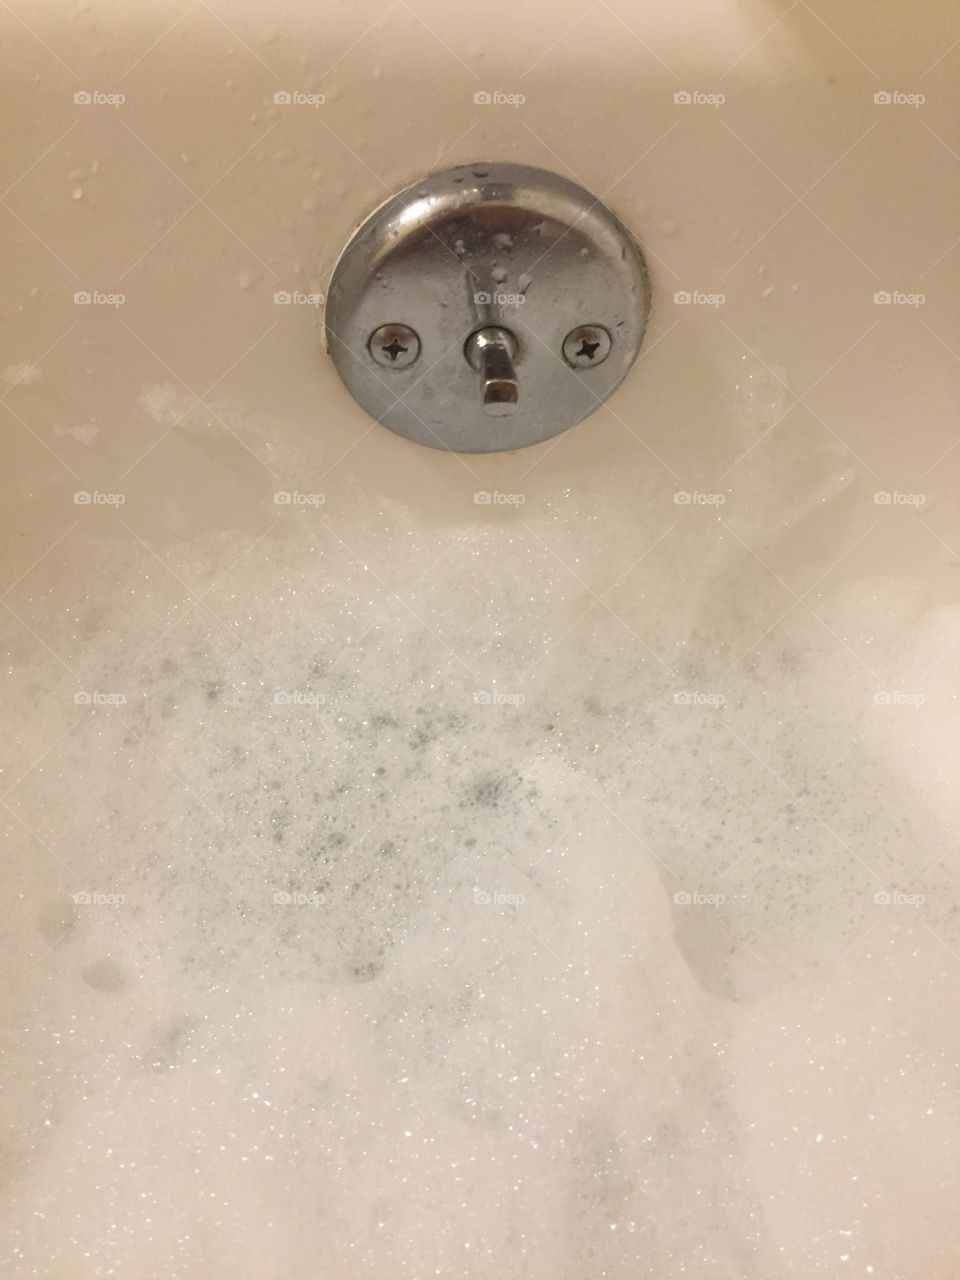 Scrub a dub dub in the tub!